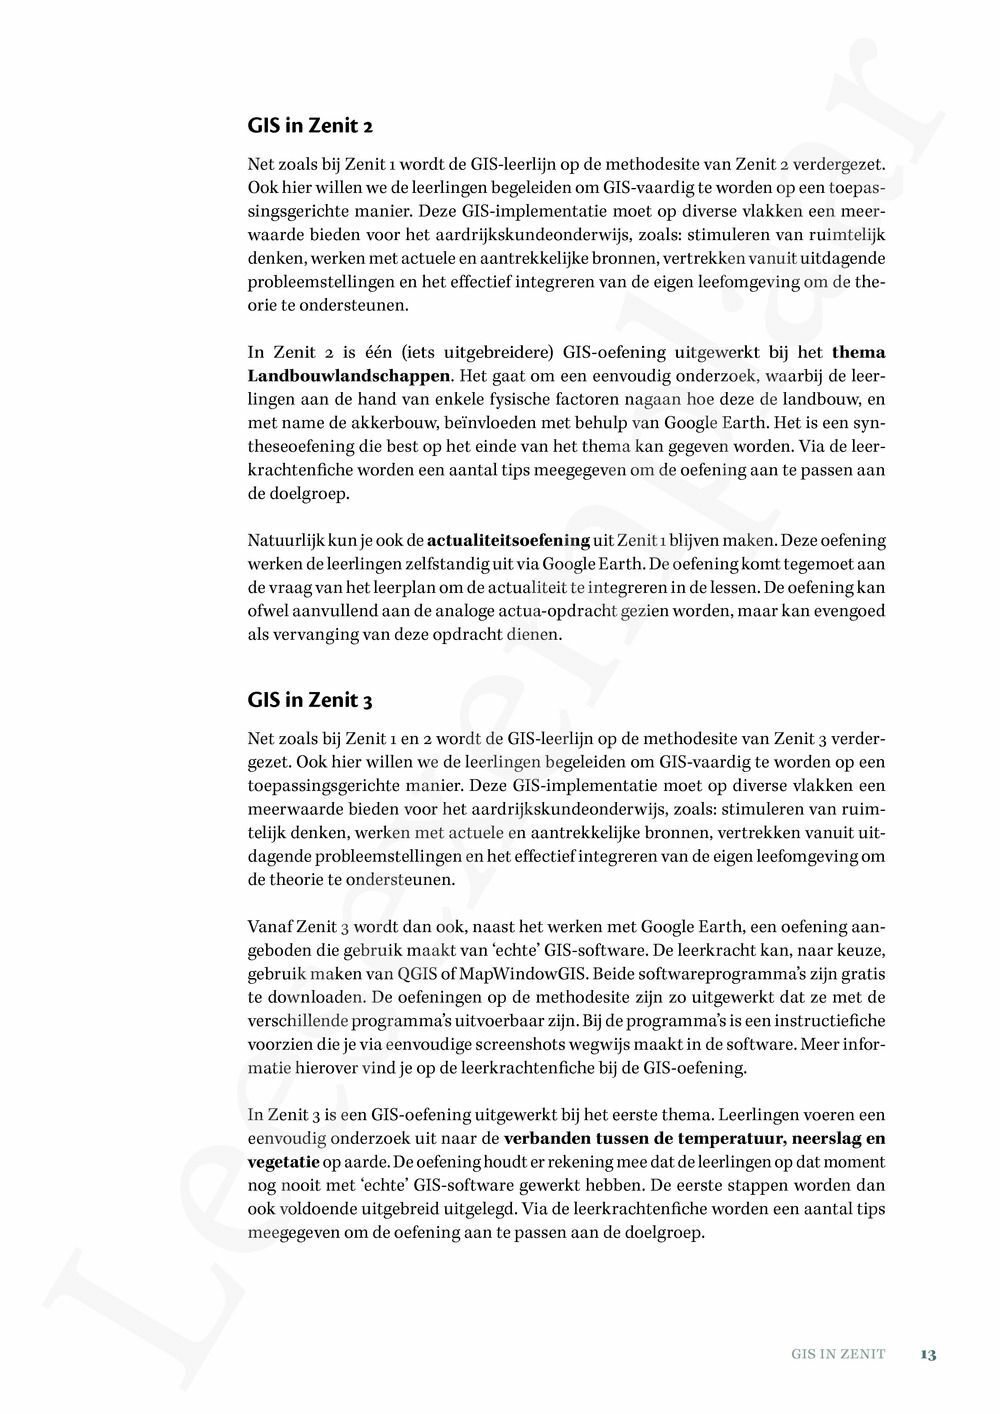 Preview: Zenit 5/6 - T5/6 Handleiding (inclusief Pelckmans Portaal en digitaal bordboek)